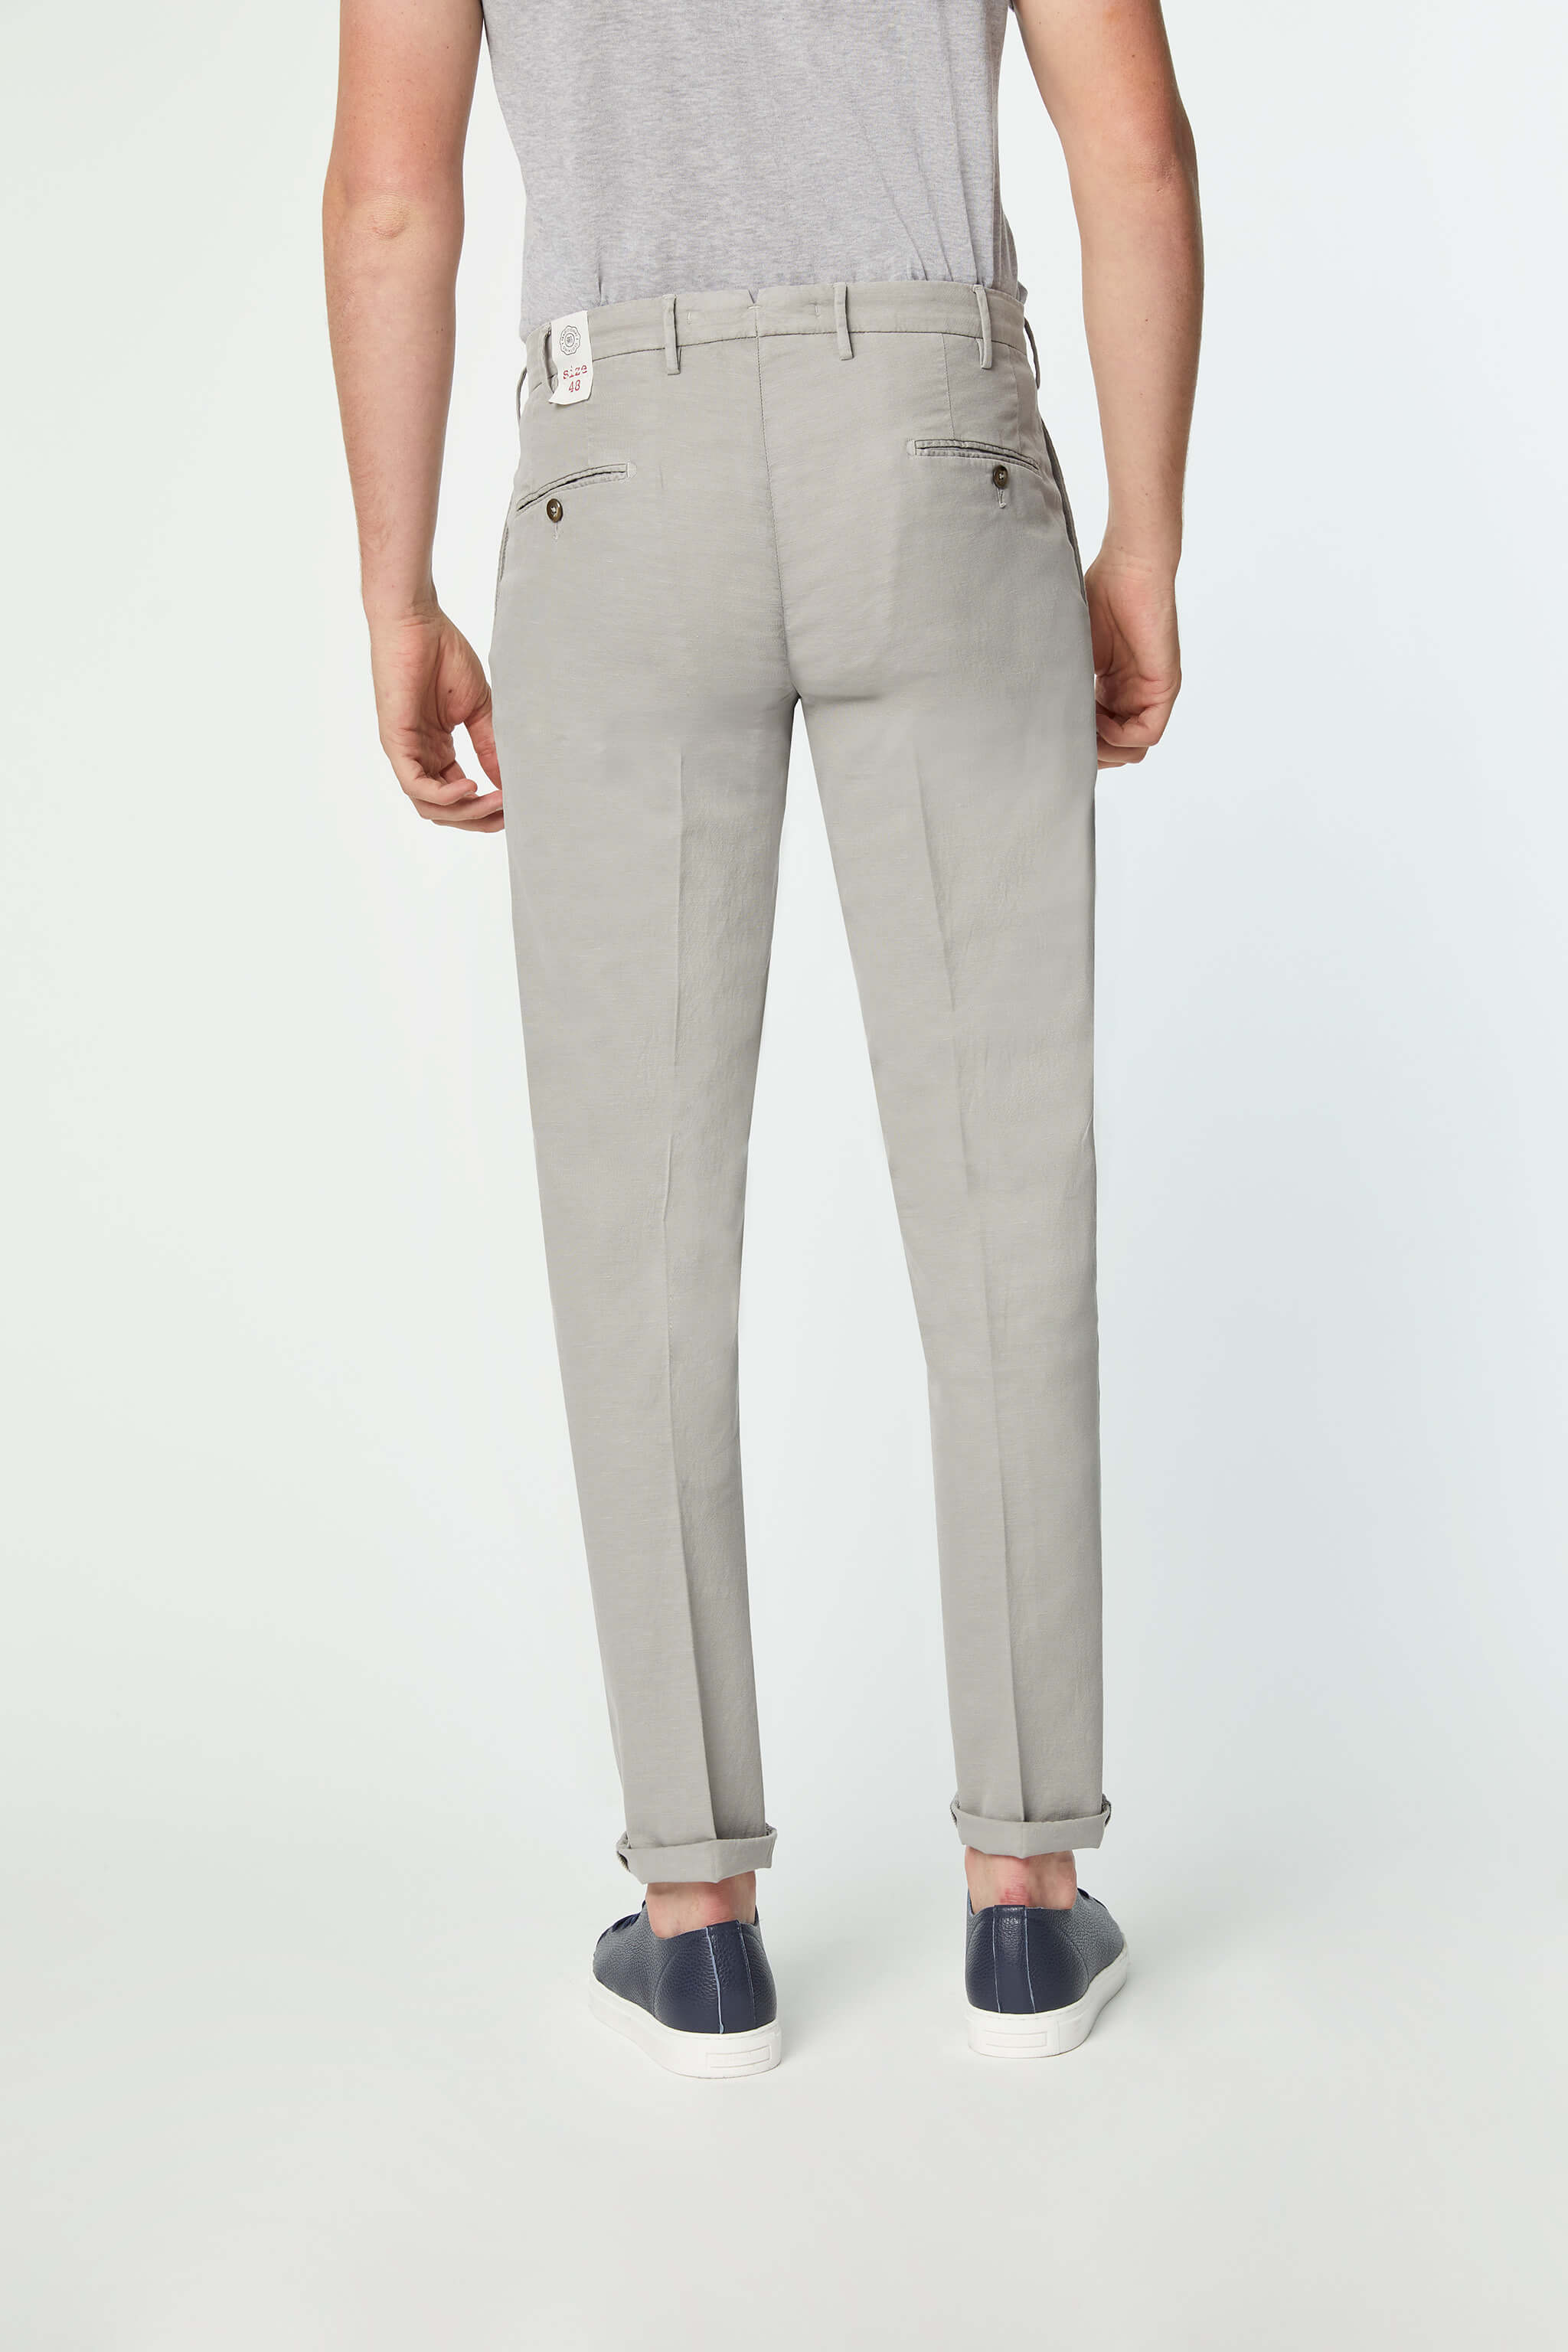 Garment-dyed ELTON pants in light Gray